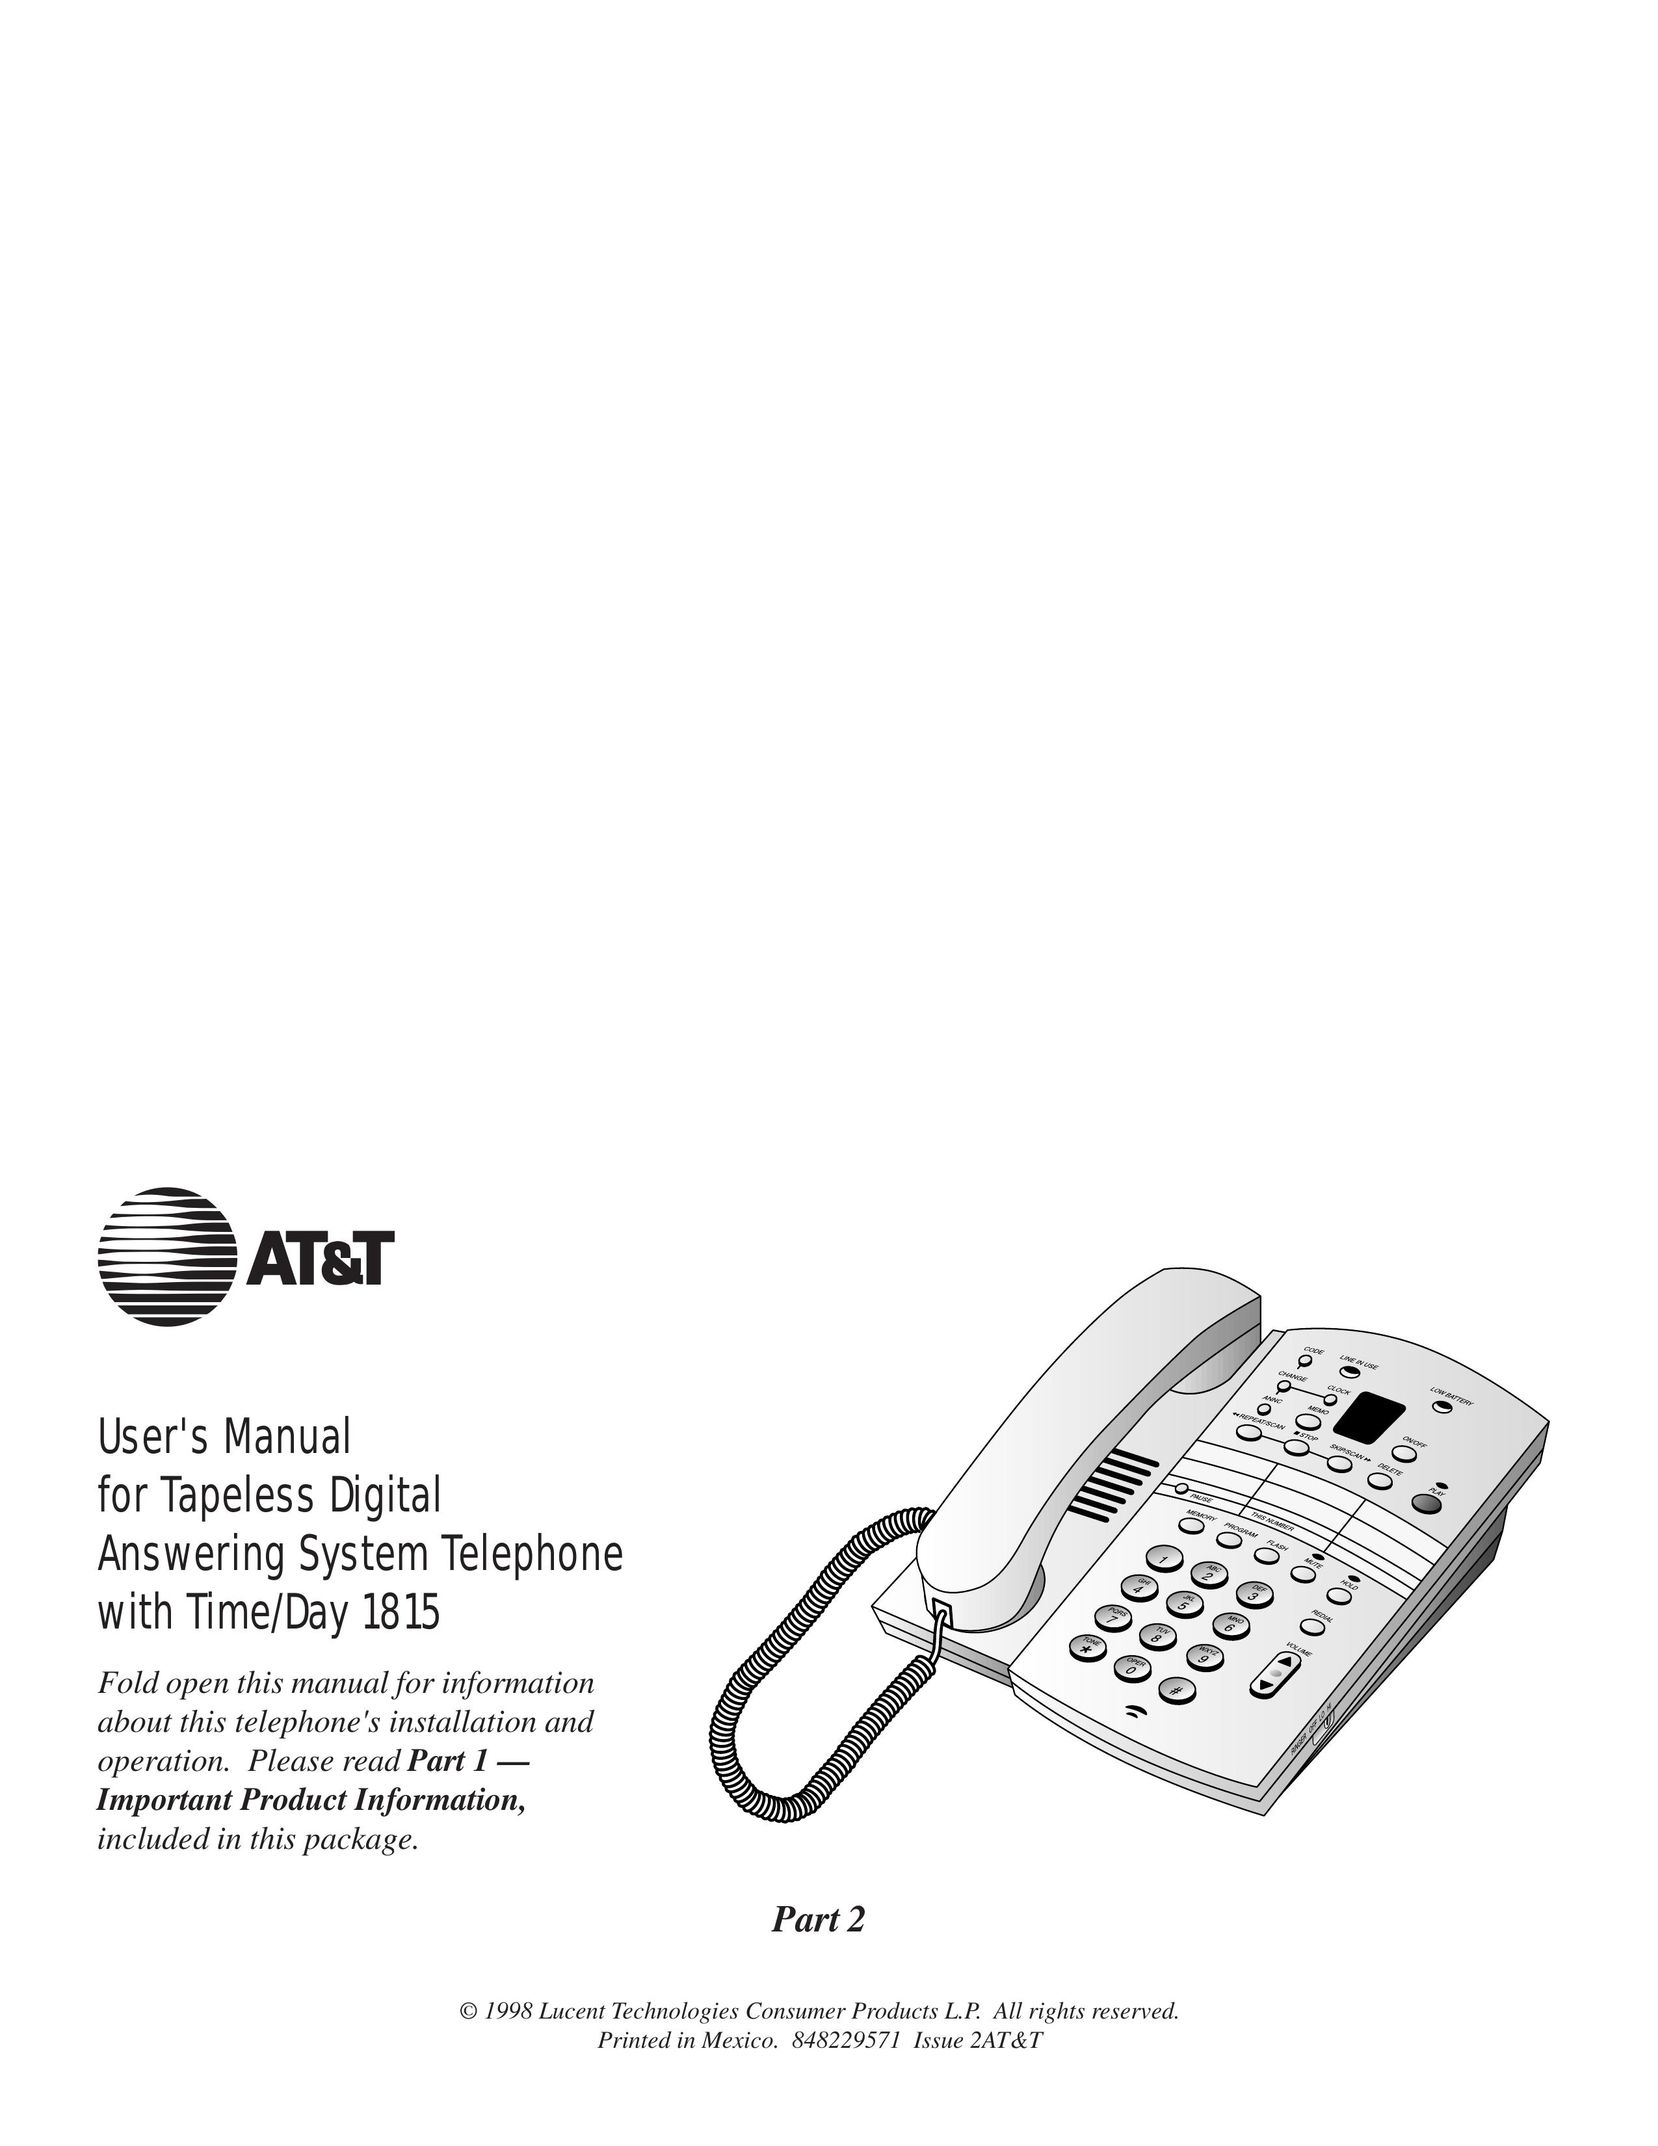 AT&T 1815 Telephone User Manual